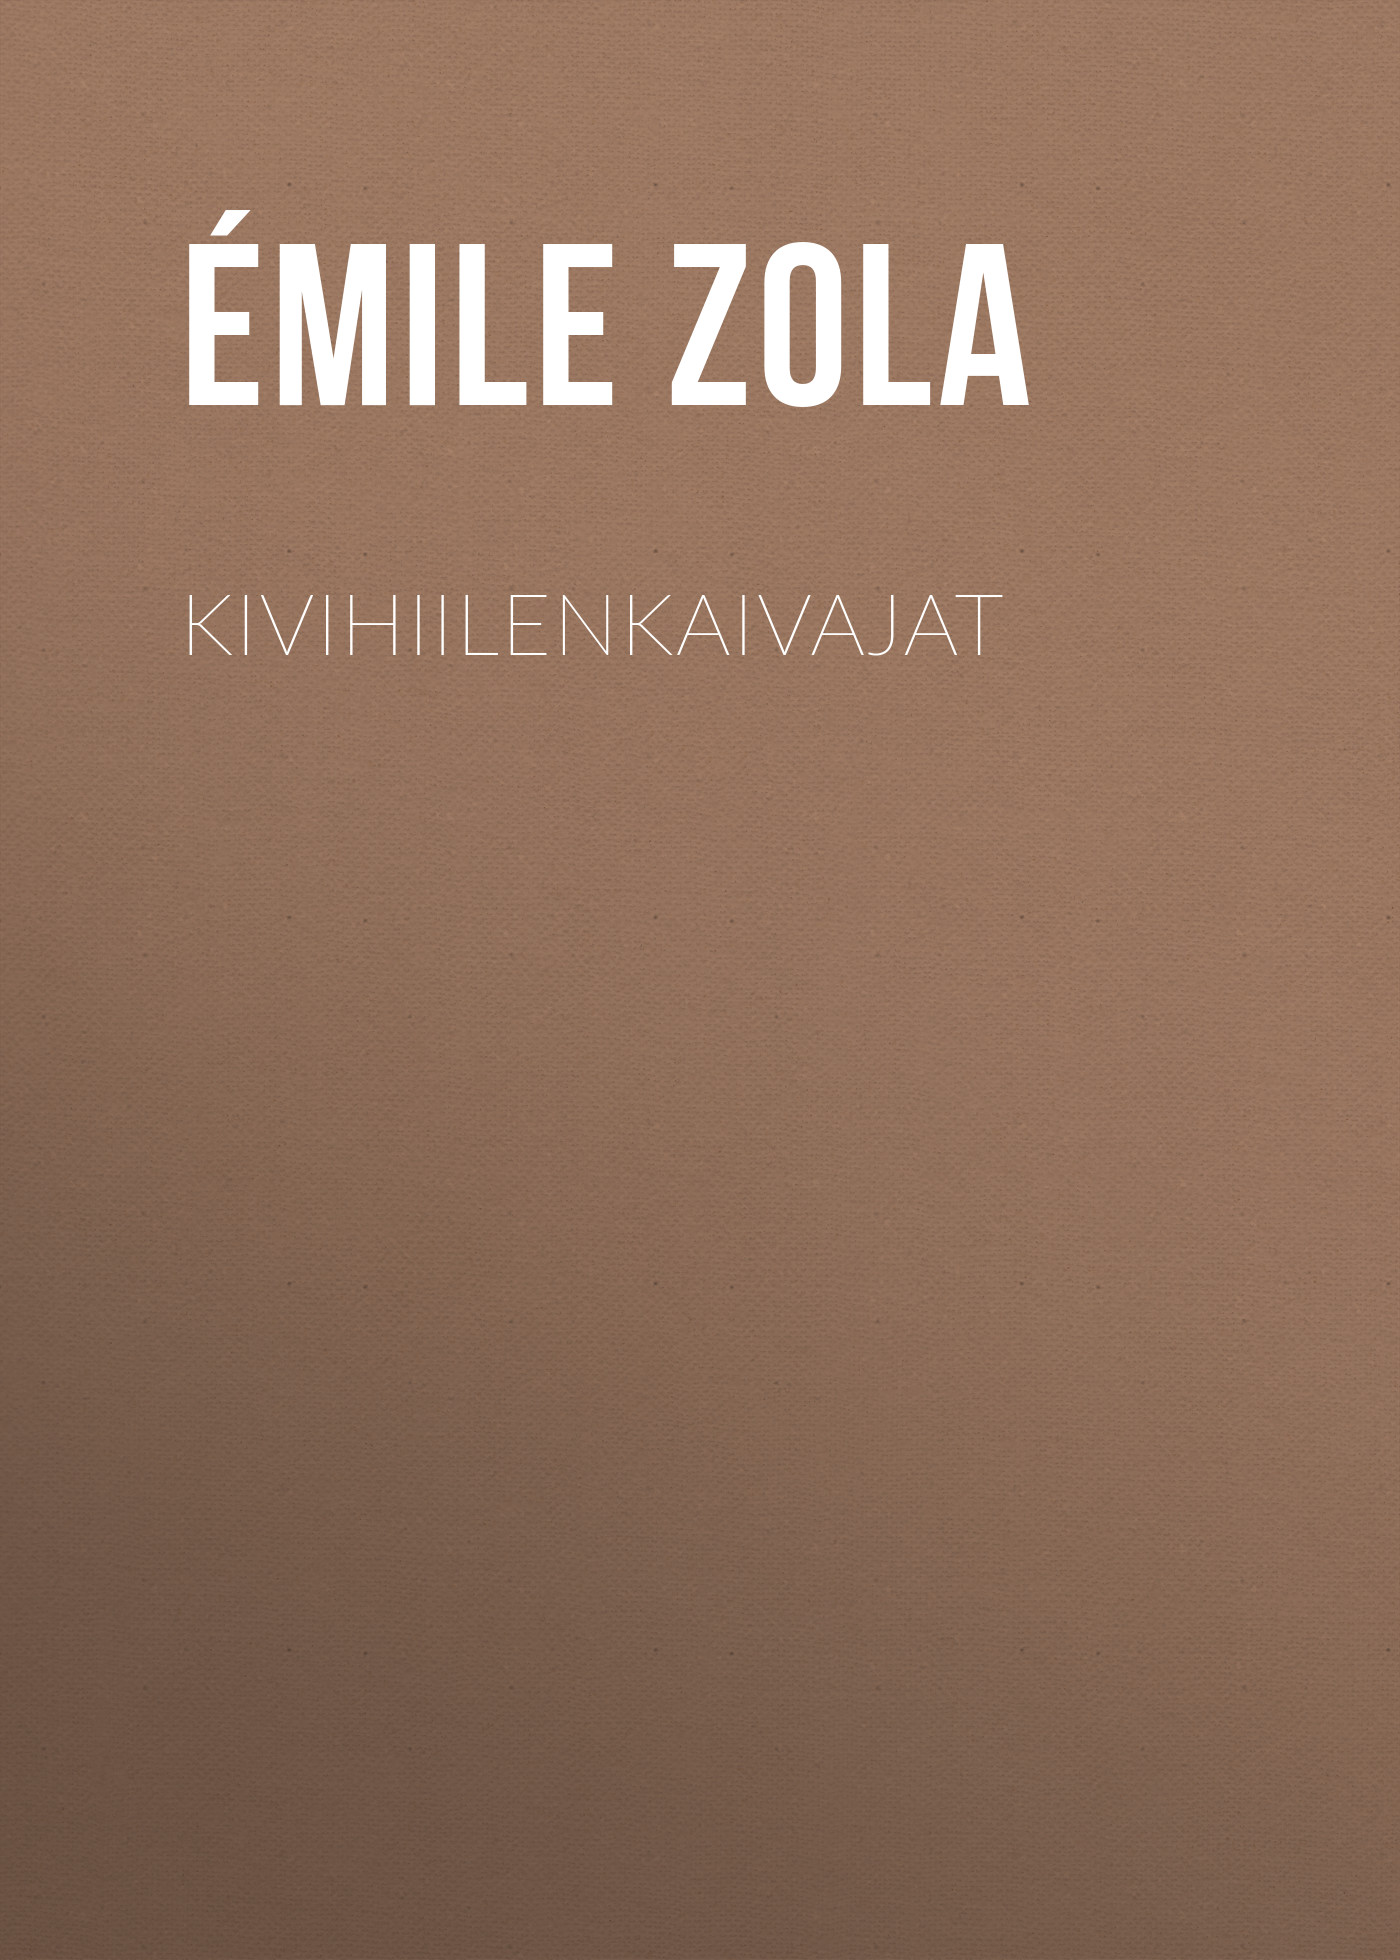 Книга Kivihiilenkaivajat из серии , созданная Émile Zola, может относится к жанру Литература 19 века, Зарубежная старинная литература, Зарубежная классика. Стоимость электронной книги Kivihiilenkaivajat с идентификатором 25561084 составляет 0 руб.